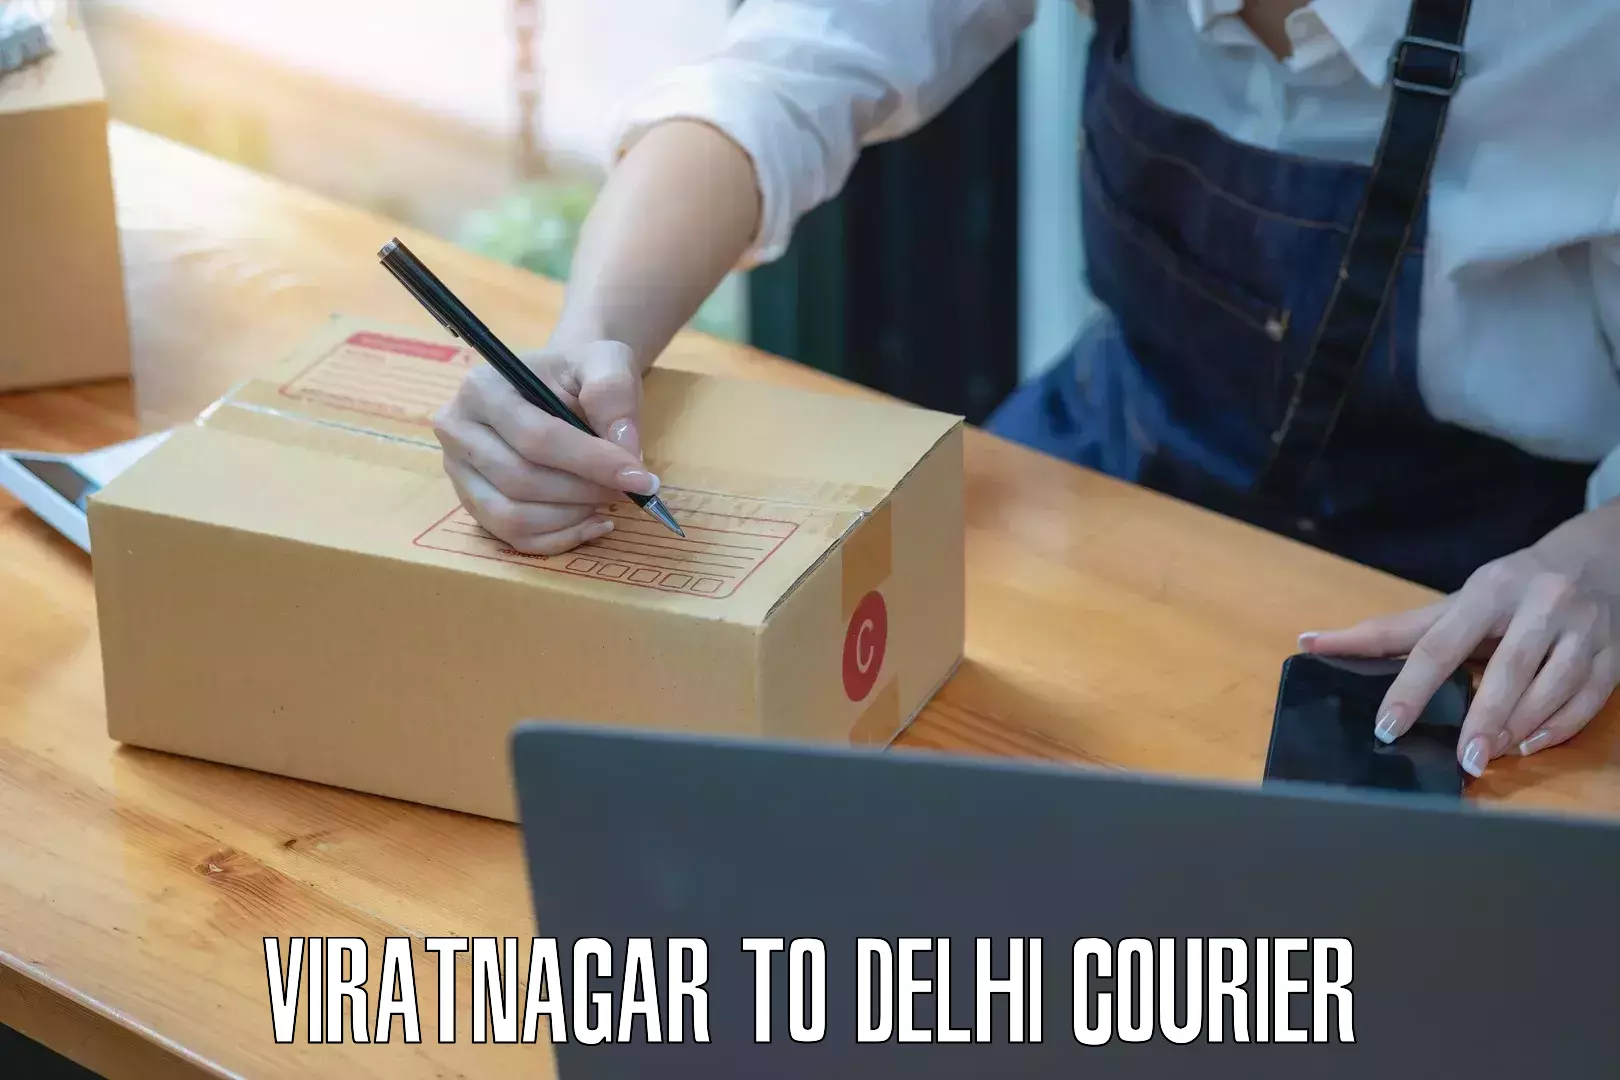 24-hour courier services Viratnagar to Jawaharlal Nehru University New Delhi